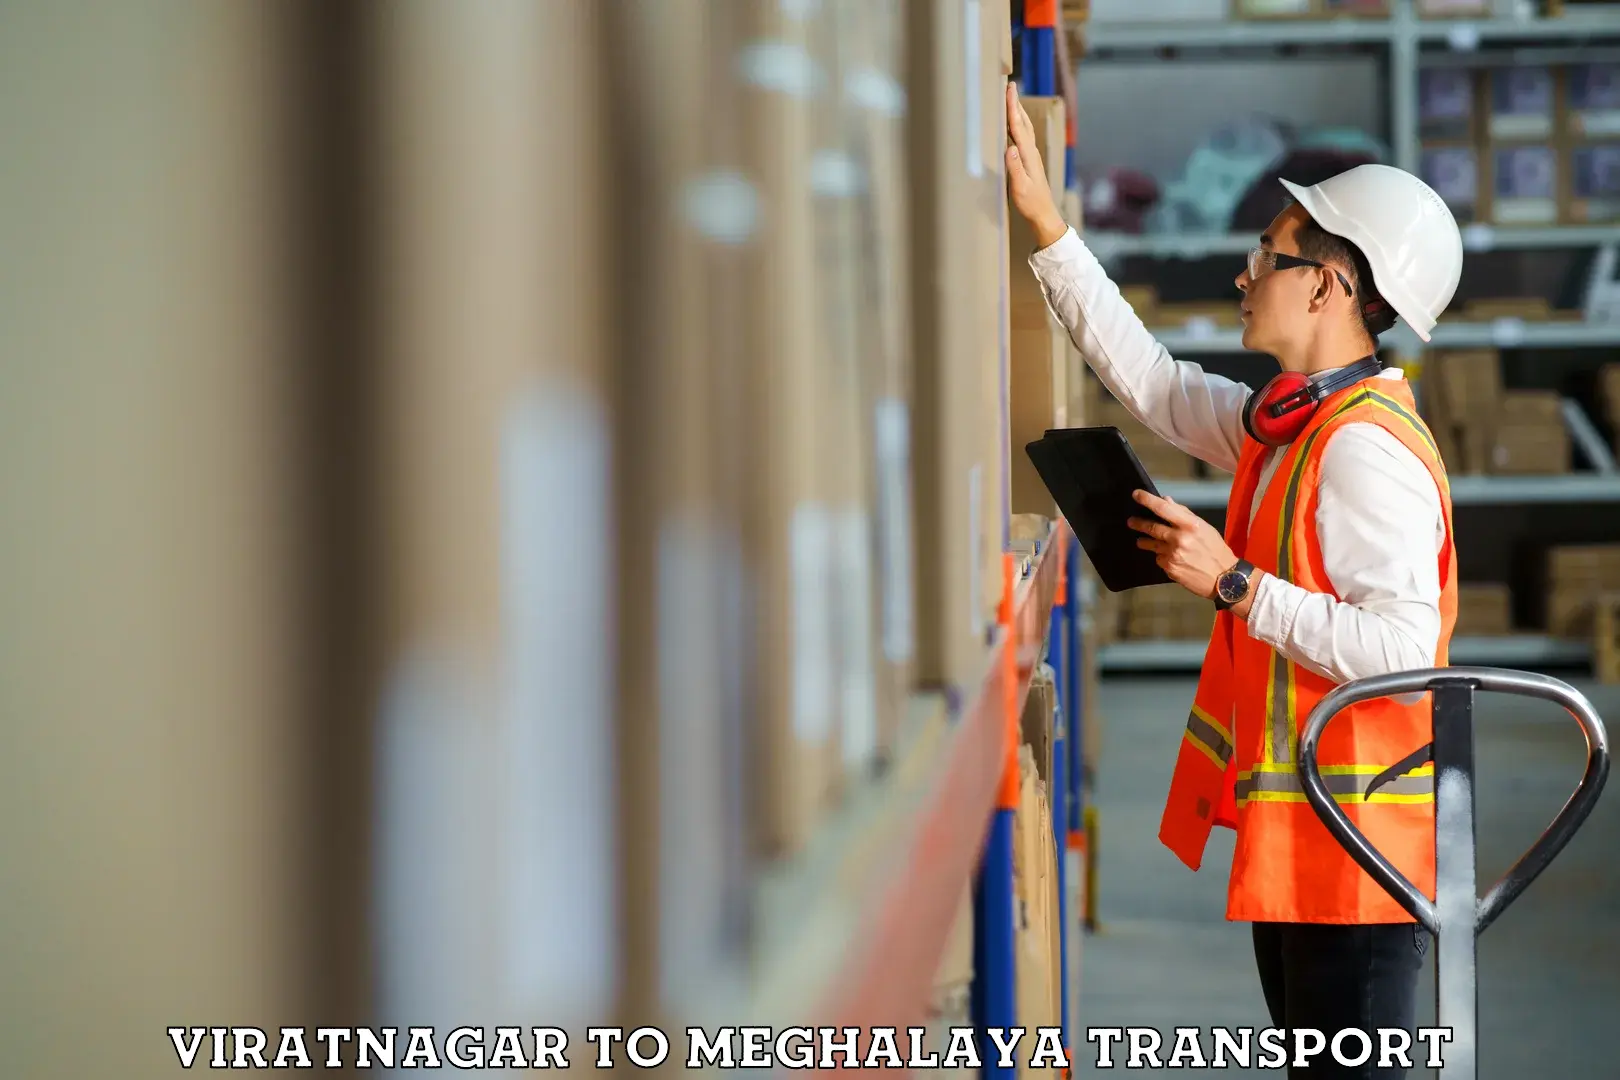 Furniture transport service Viratnagar to NIT Meghalaya